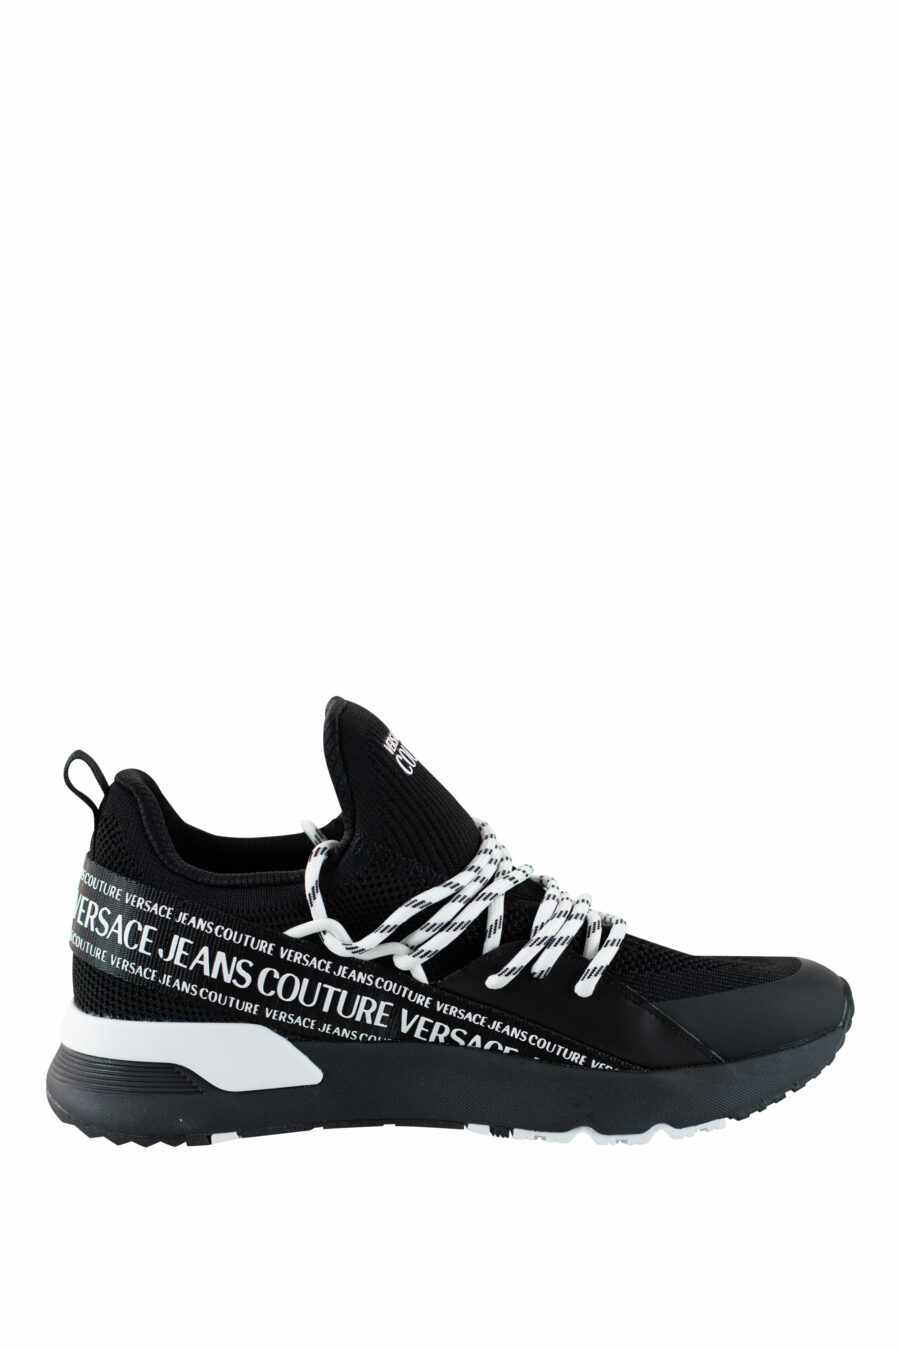 Zapatillas negras "dynamic" estilo calcetin con logo en cinta - IMG 4519